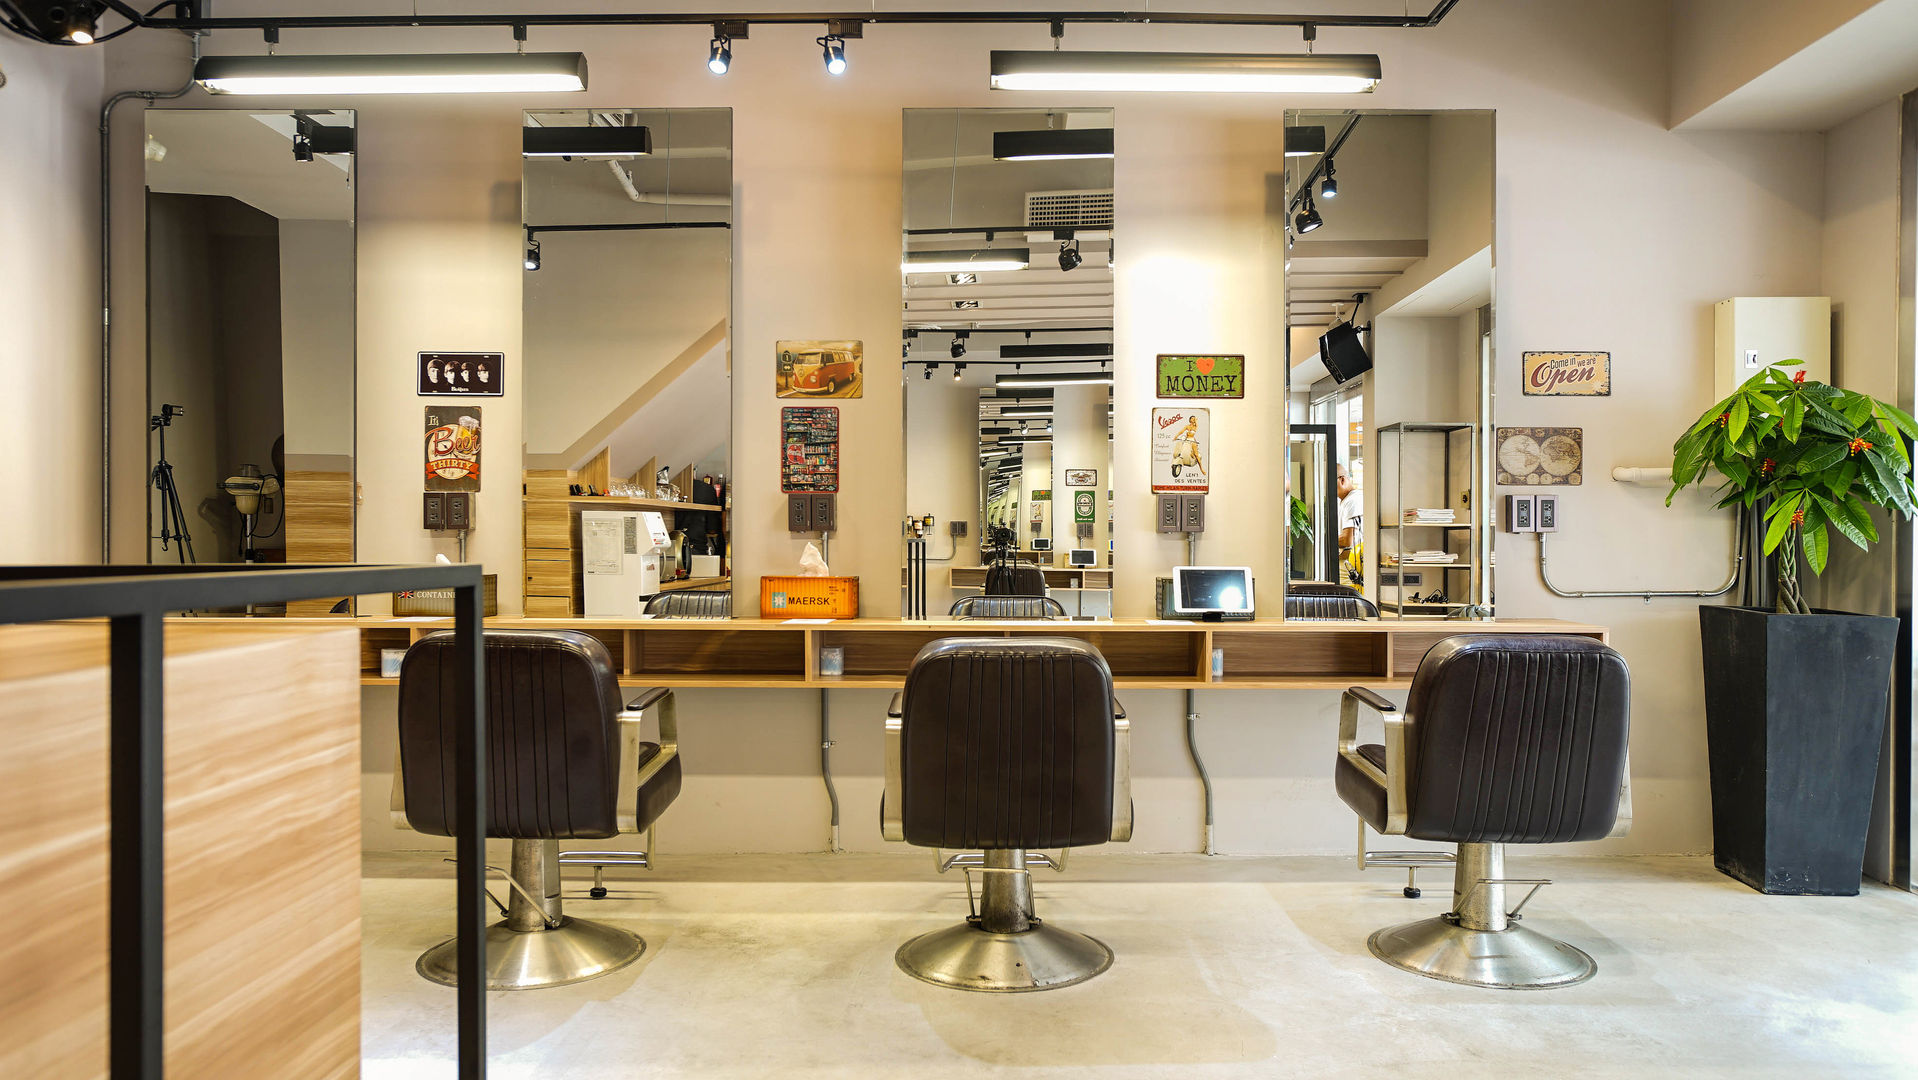 B&K Hair Salon, 見和空間設計 見和空間設計 Powierzchnie handlowe Wzmocniony beton Powierzchnie handlowe